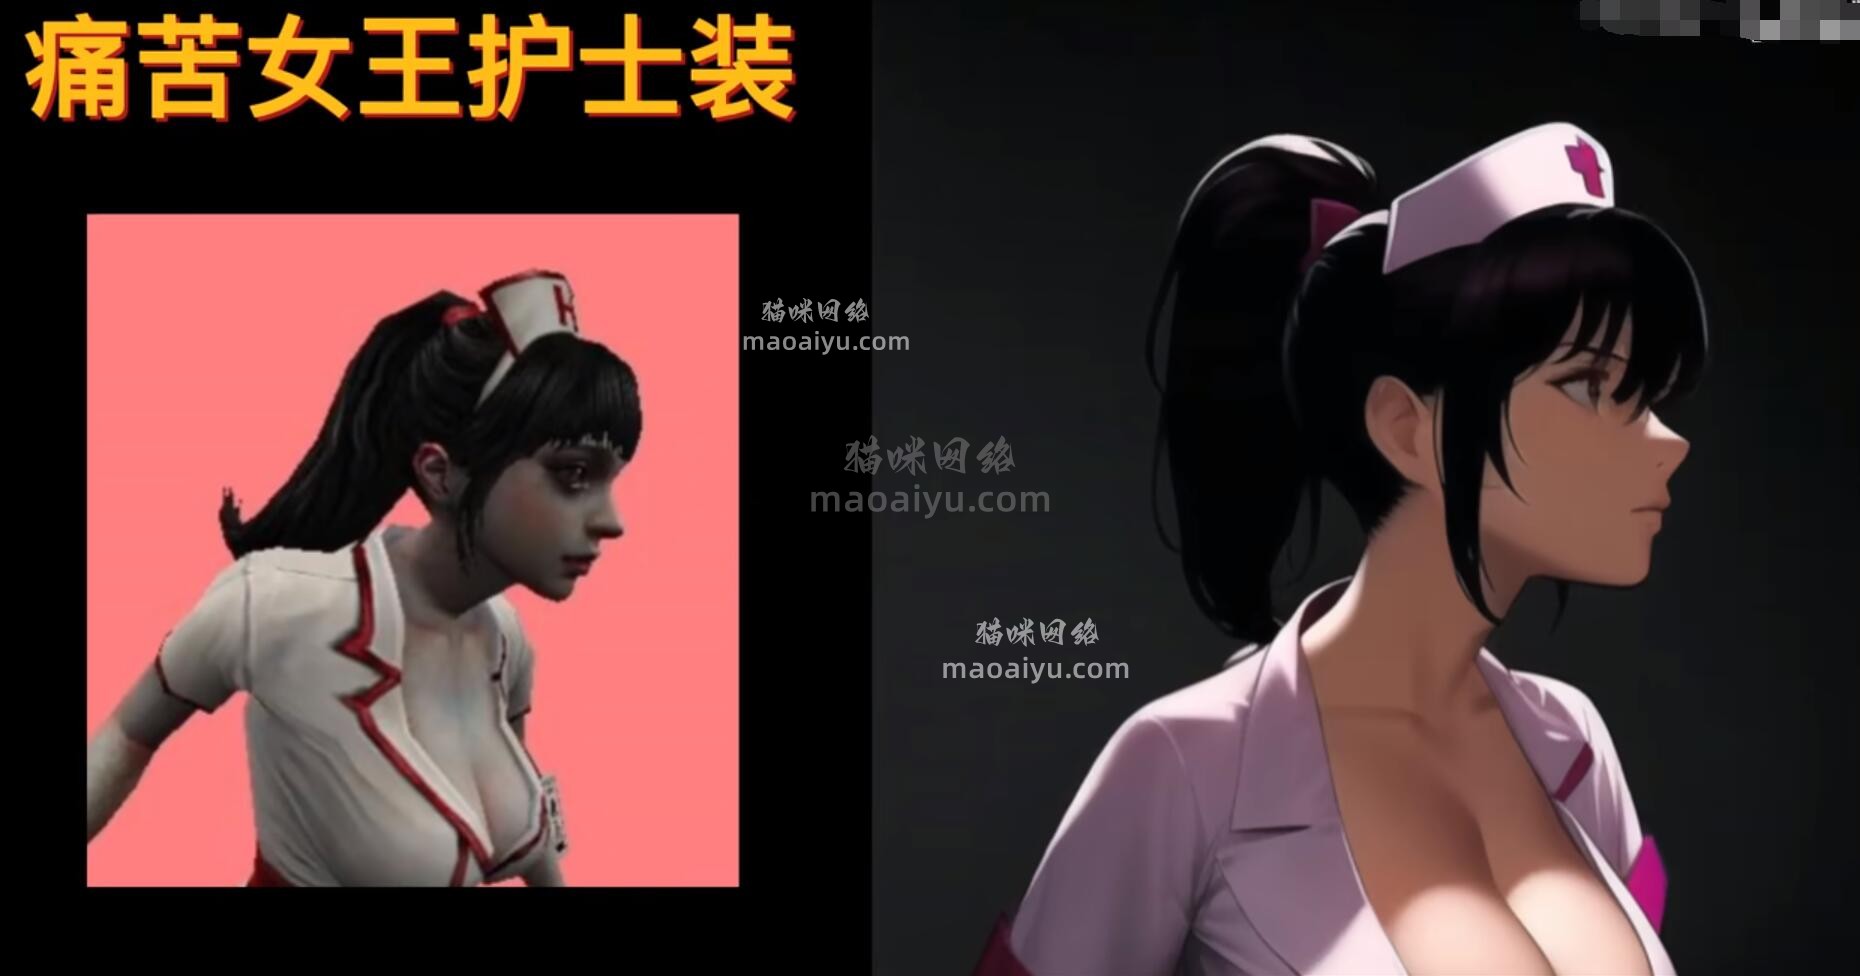 《CSOL》手绘游戏人物角色痛苦女王护士装3期-猫咪网络